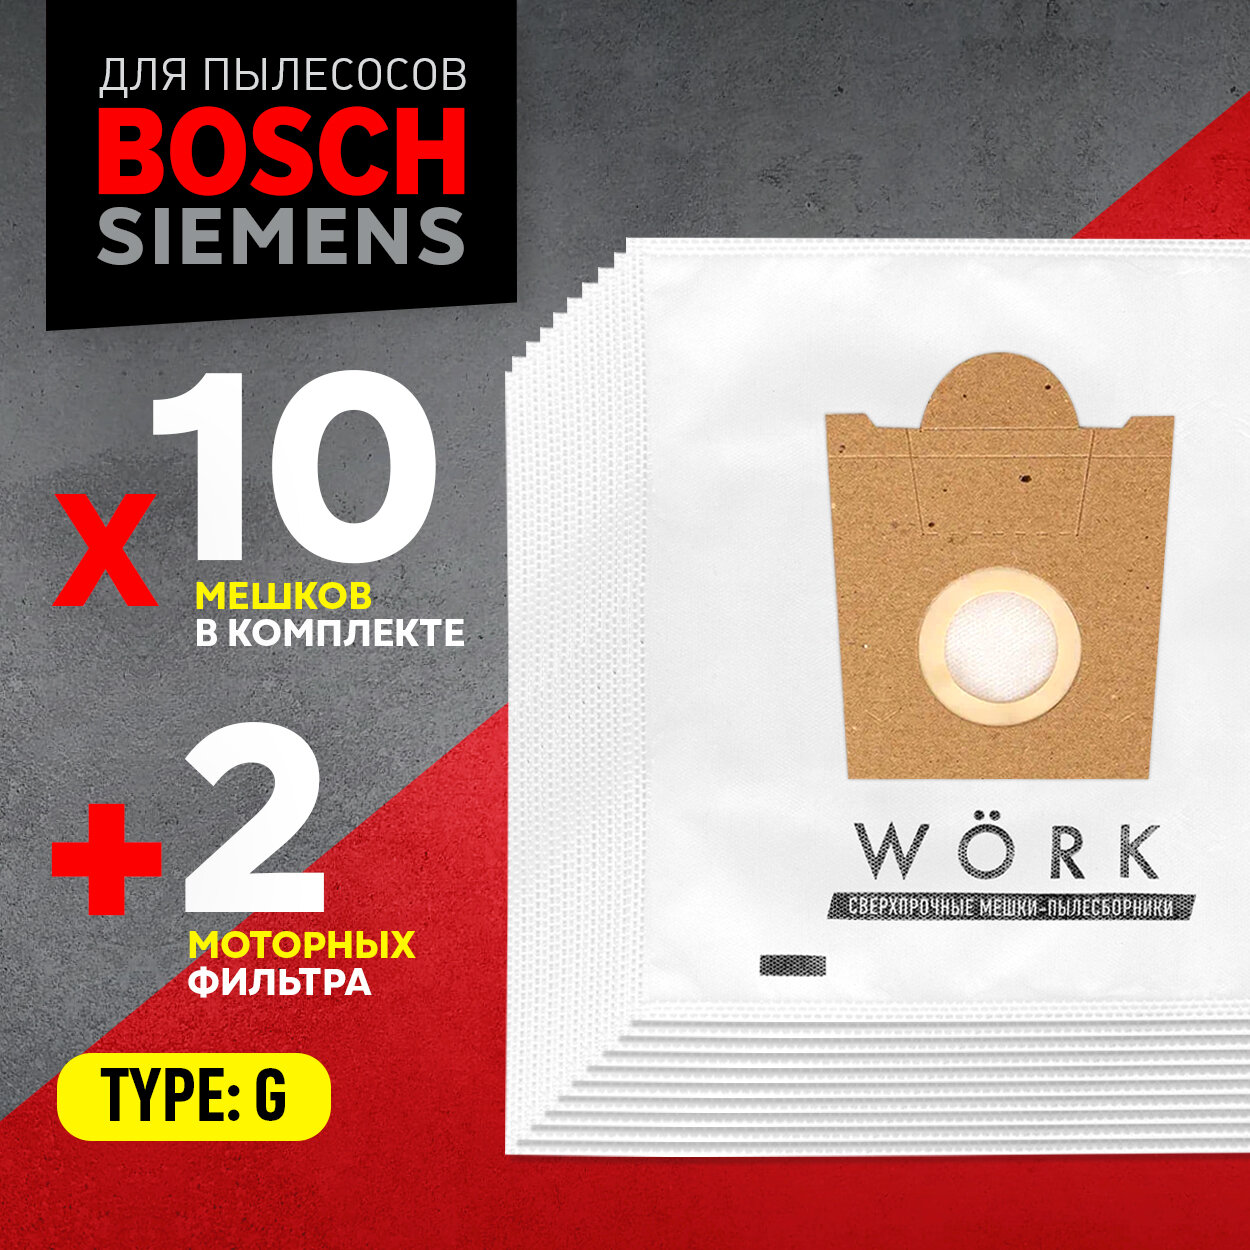 Мешки для пылесосов Bosch, Бош, Karcher, Керхер, Siemens, Тип: G, 10 шт и 2 микрофильтра. Бренд Work